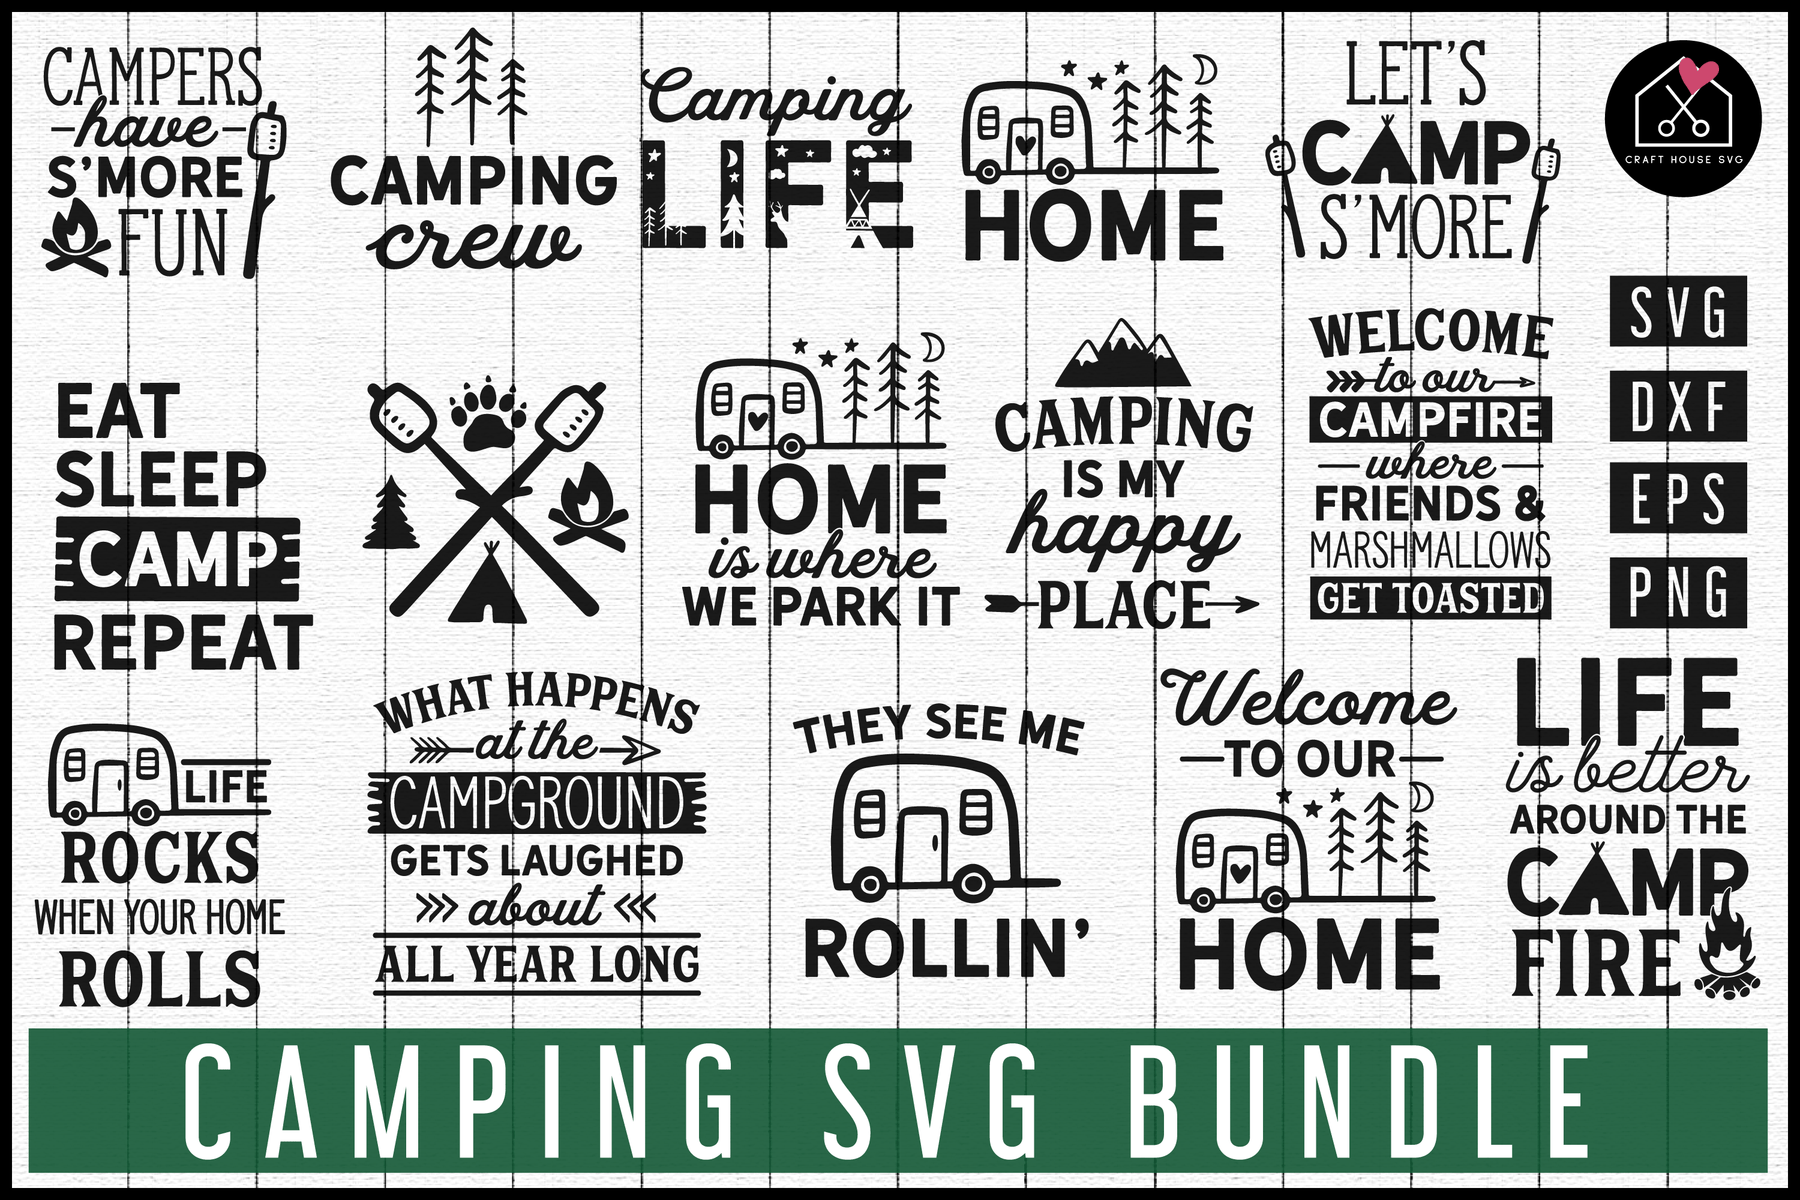 Camping Svg Bundle Mb67 Craft House Svg